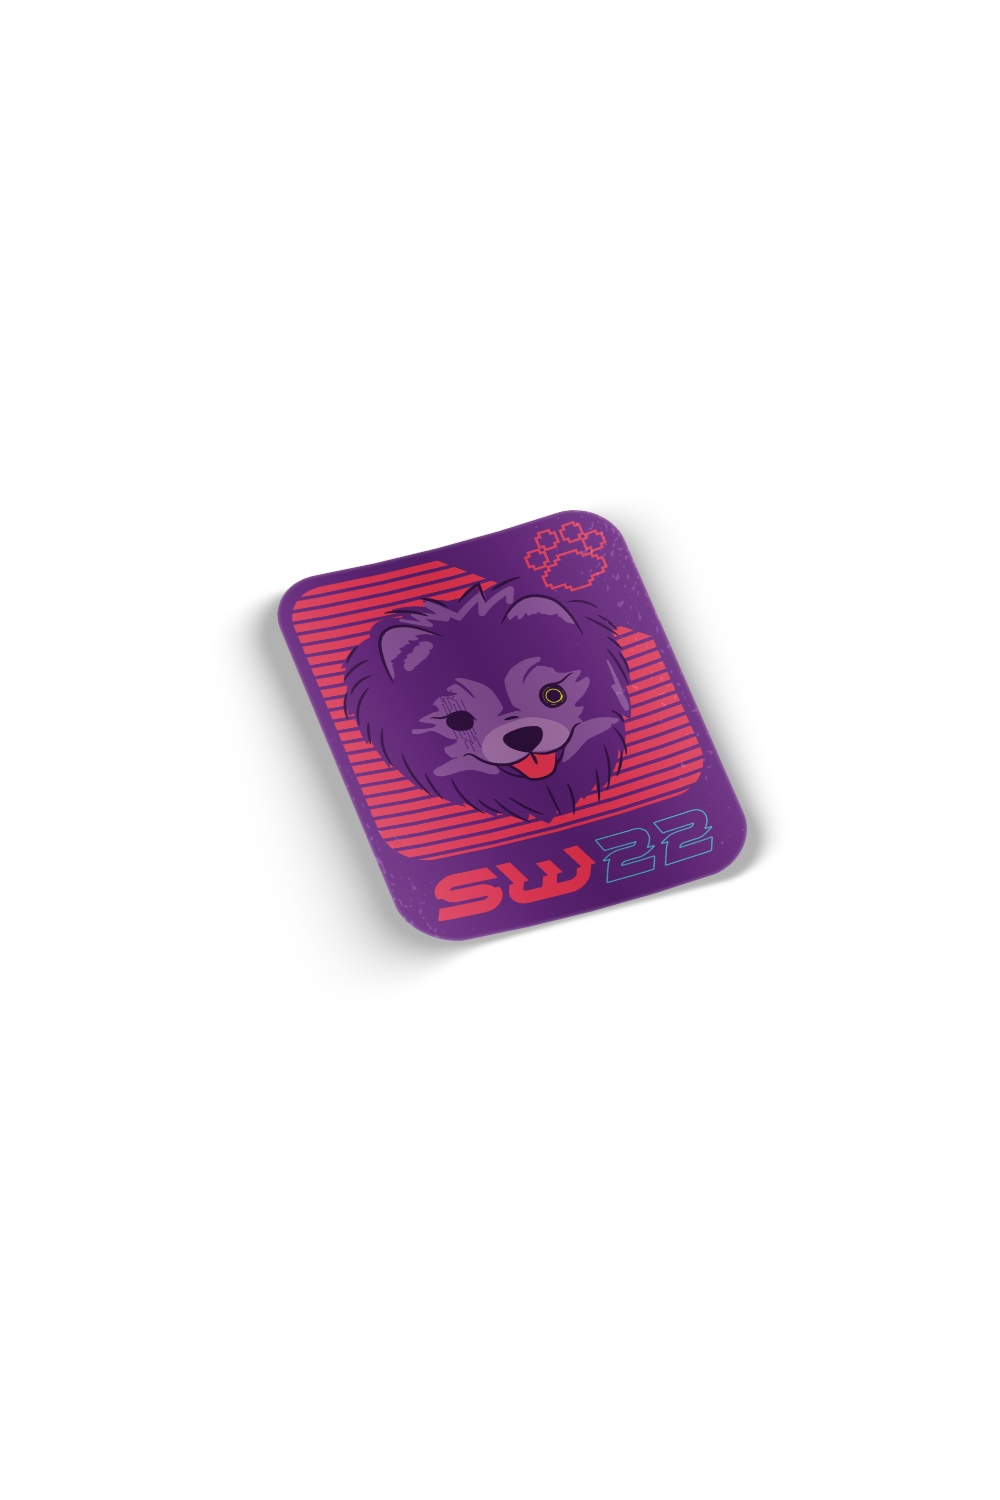 Pomeranian Wink Sticker